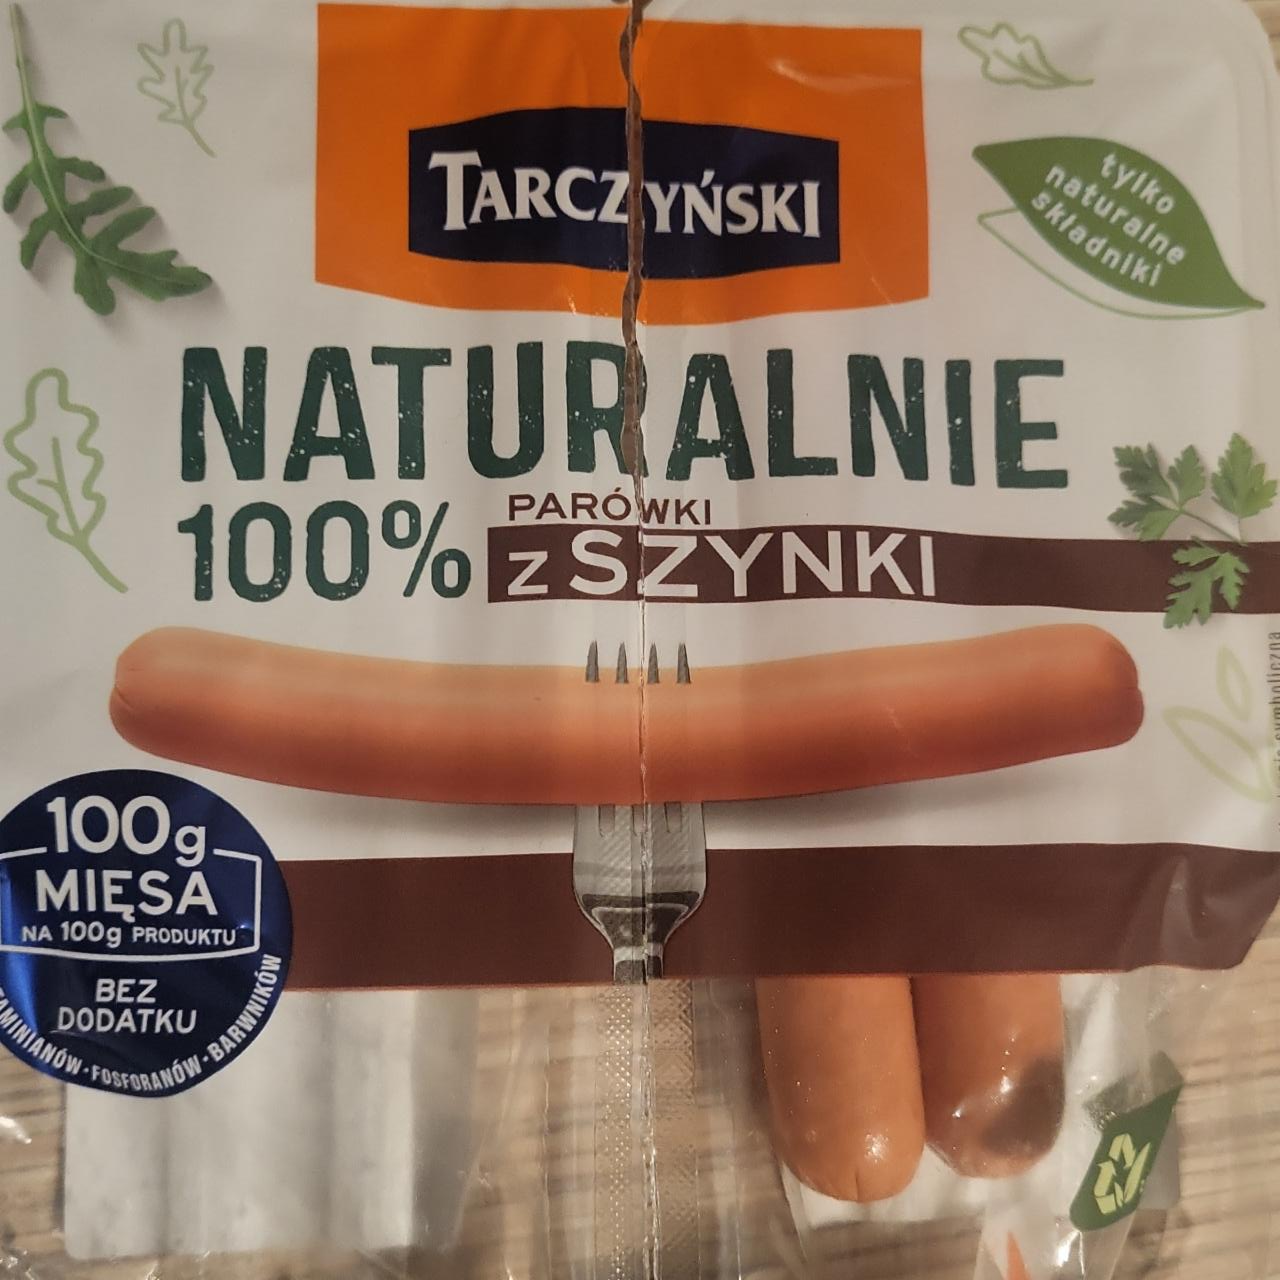 Фото - Naturalnie Parówki 100% z szynki Tarczyński